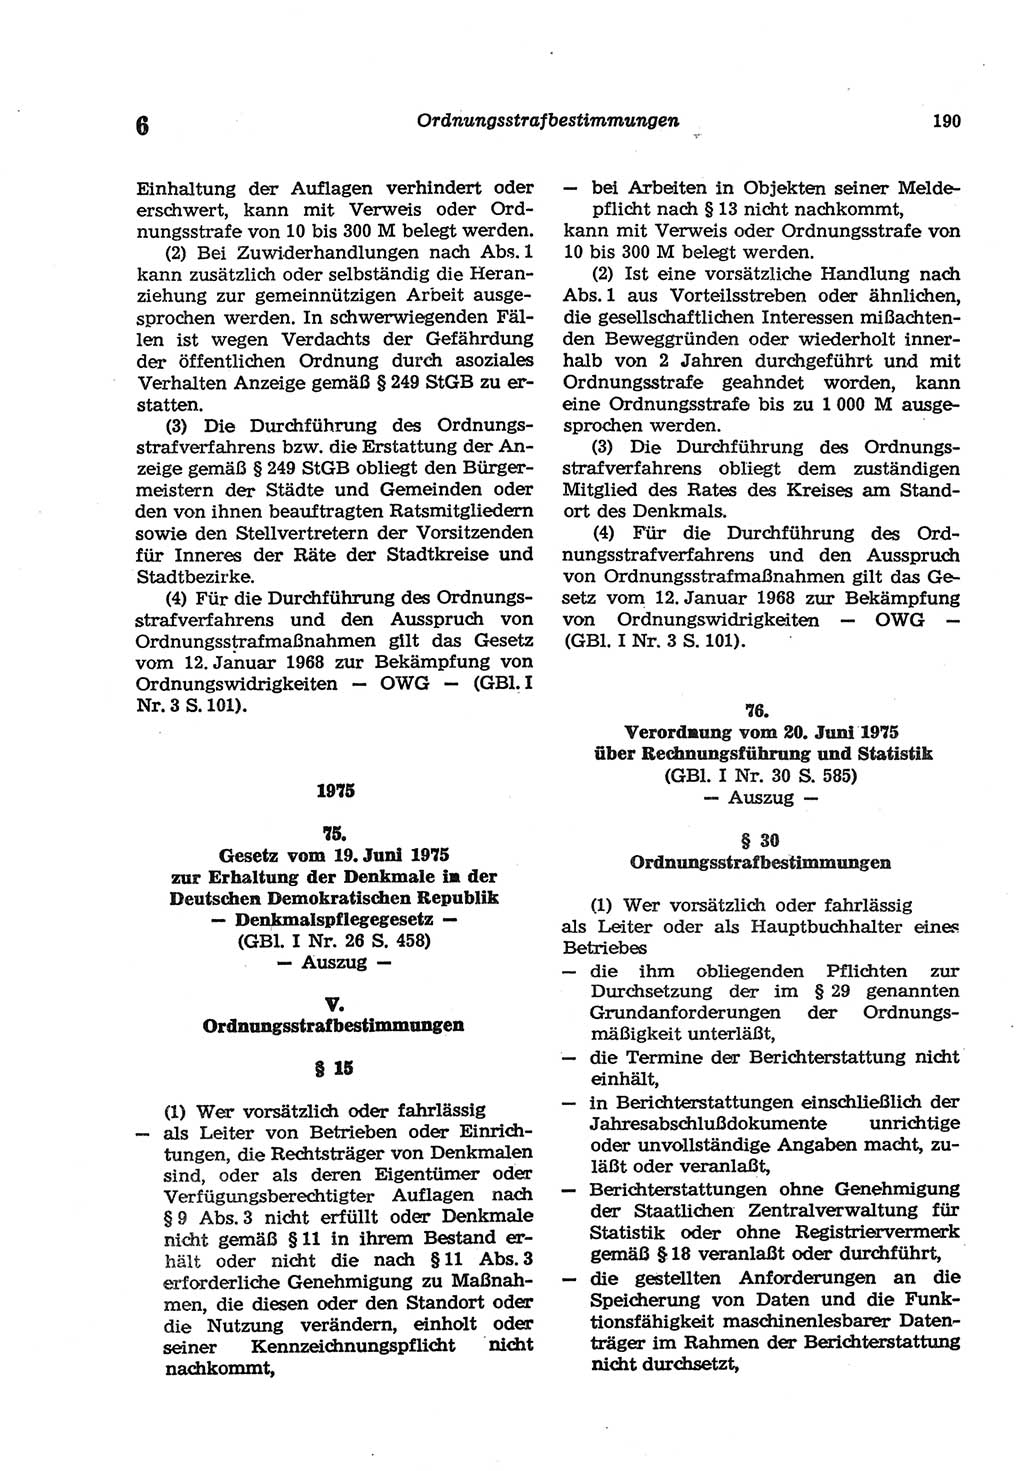 Strafgesetzbuch (StGB) der Deutschen Demokratischen Republik (DDR) und angrenzende Gesetze und Bestimmungen 1977, Seite 190 (StGB DDR Ges. Best. 1977, S. 190)